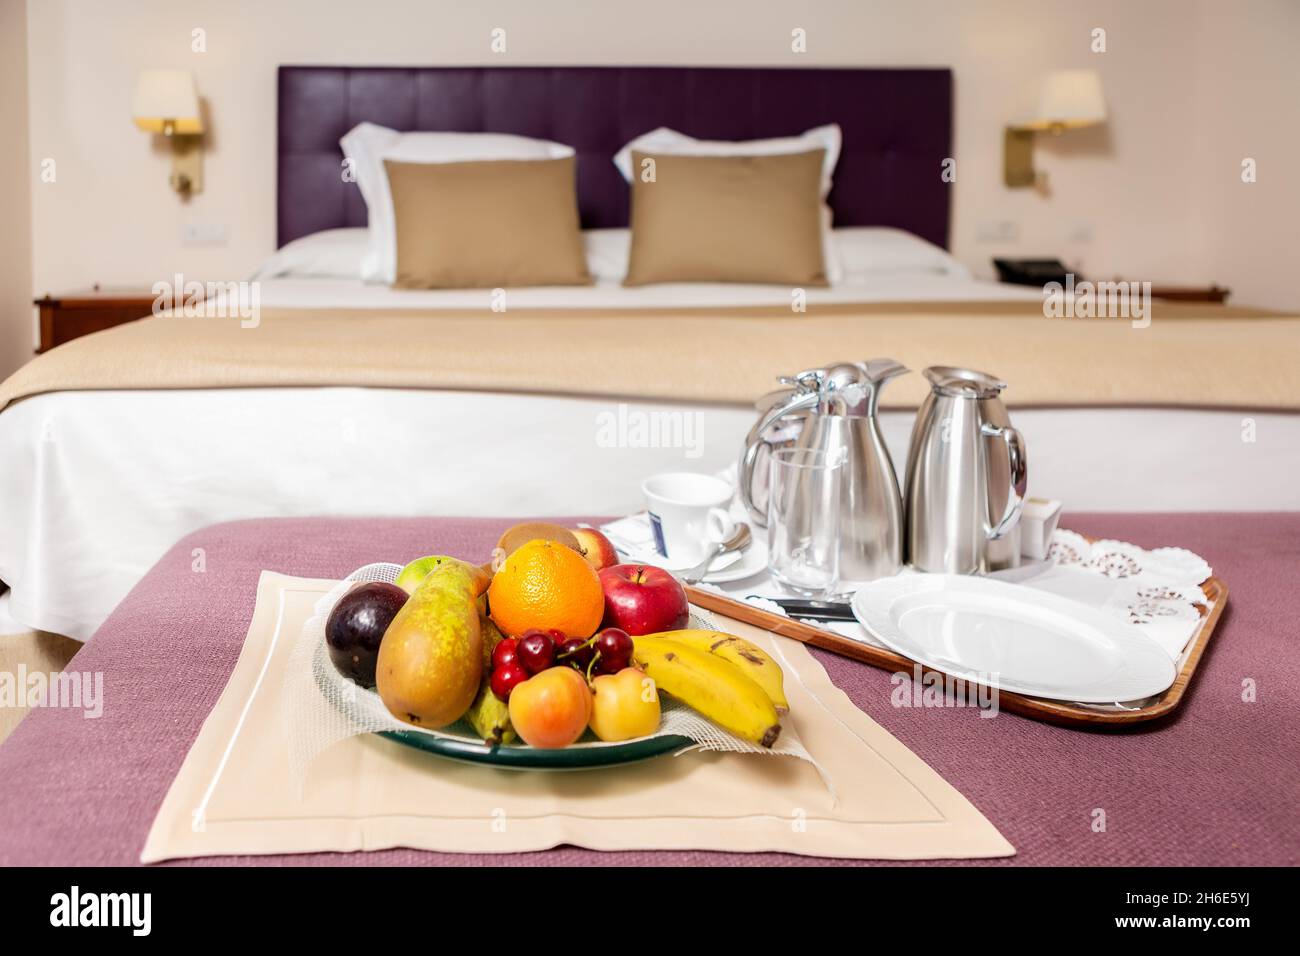 Teller mit bunten frischen Früchten und Kaffee-Set auf Tablett Stellen Sie auf den Tisch mit violetter Abdeckung auf dem Hintergrund des Bettes Mit weißem und braunem Bettlaken Stockfoto